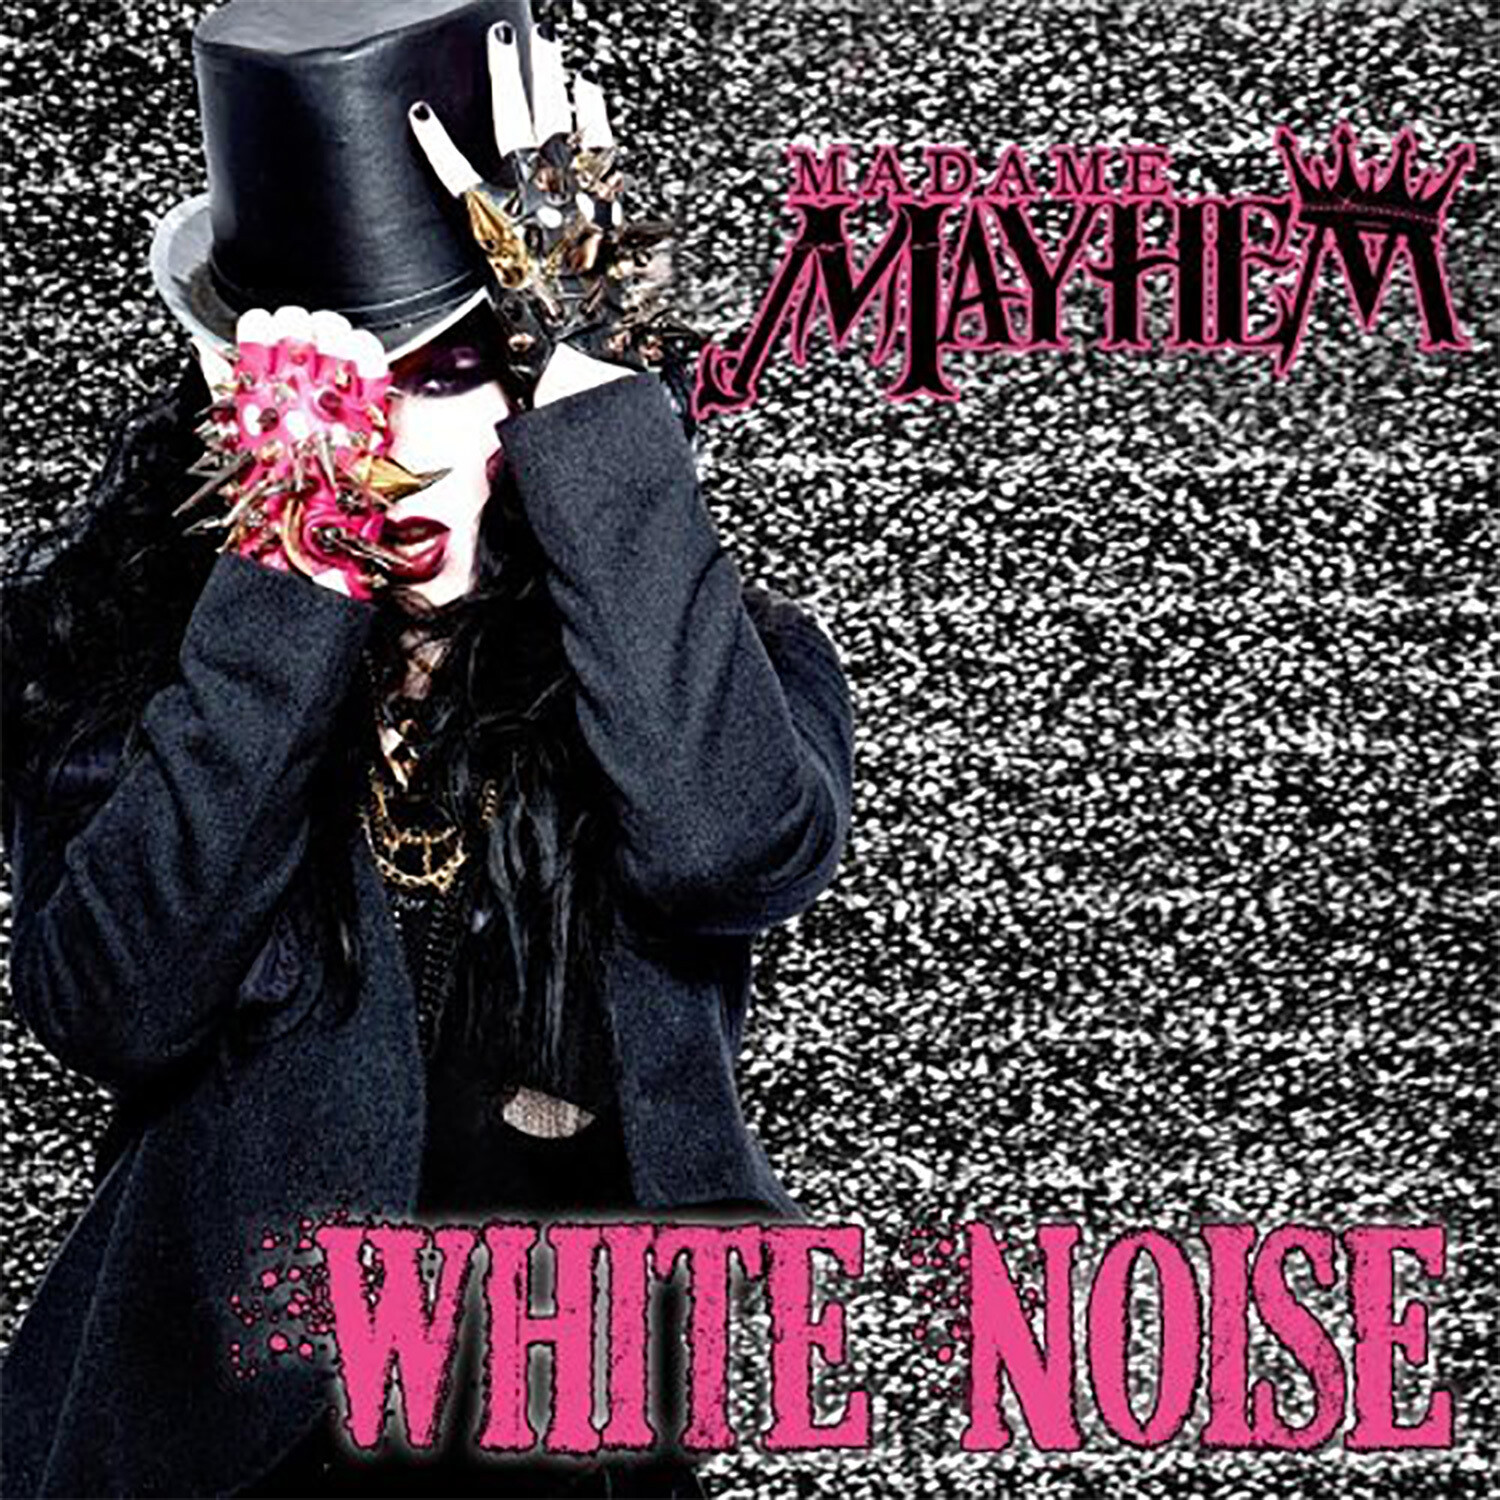 CD - White Noise